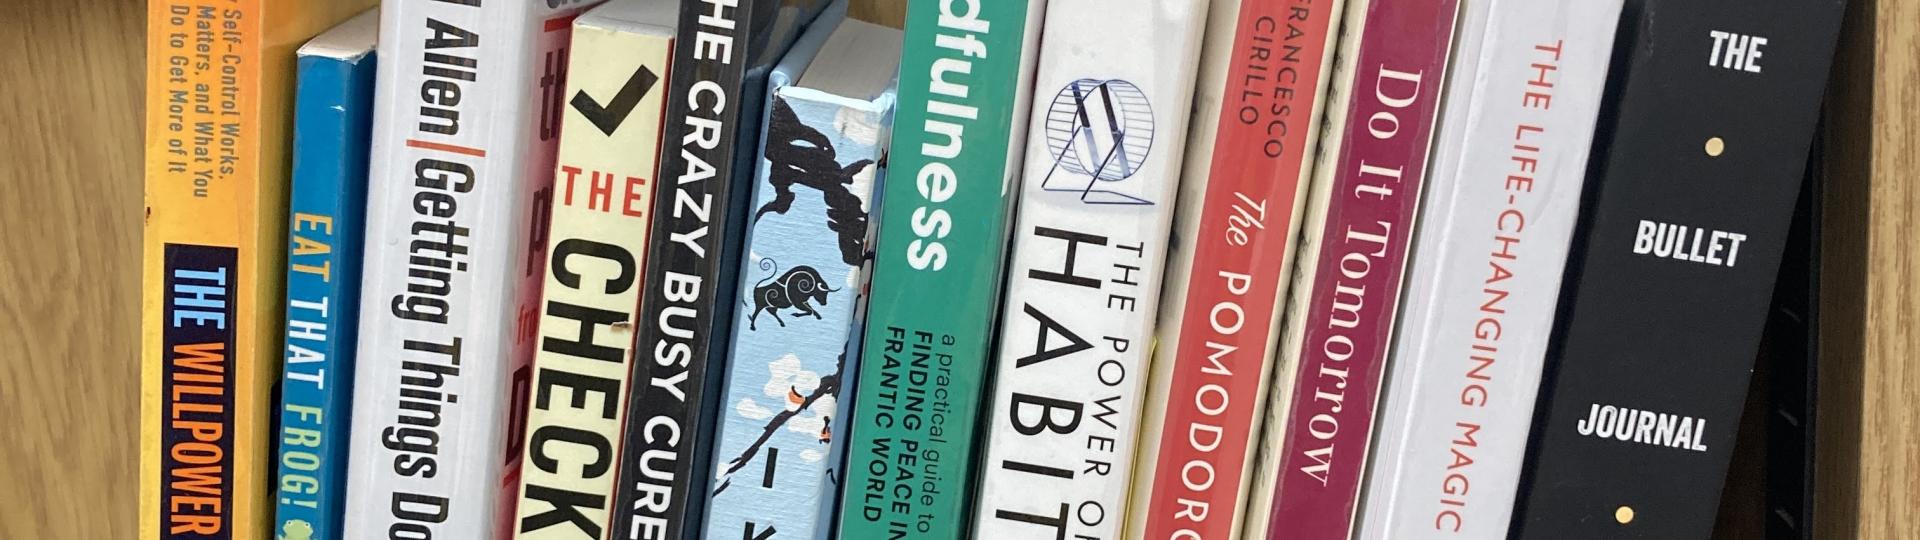 A row of productivity books on a shelf